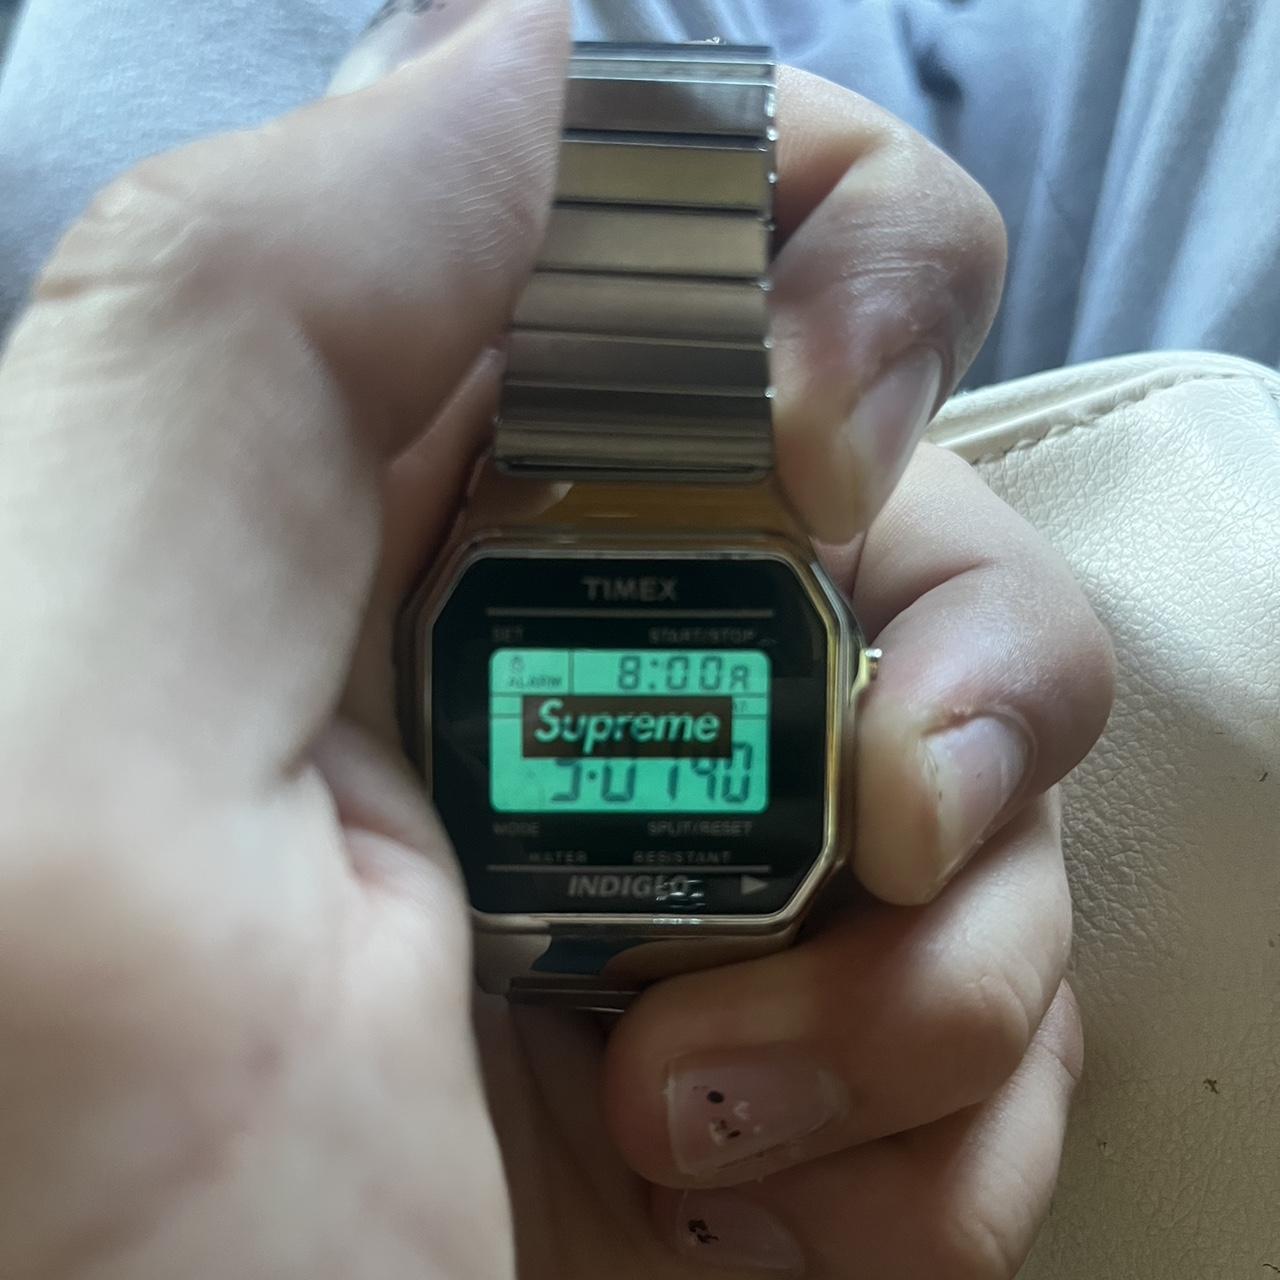 Supreme 19aw Timex Digital Watch Silver digital...